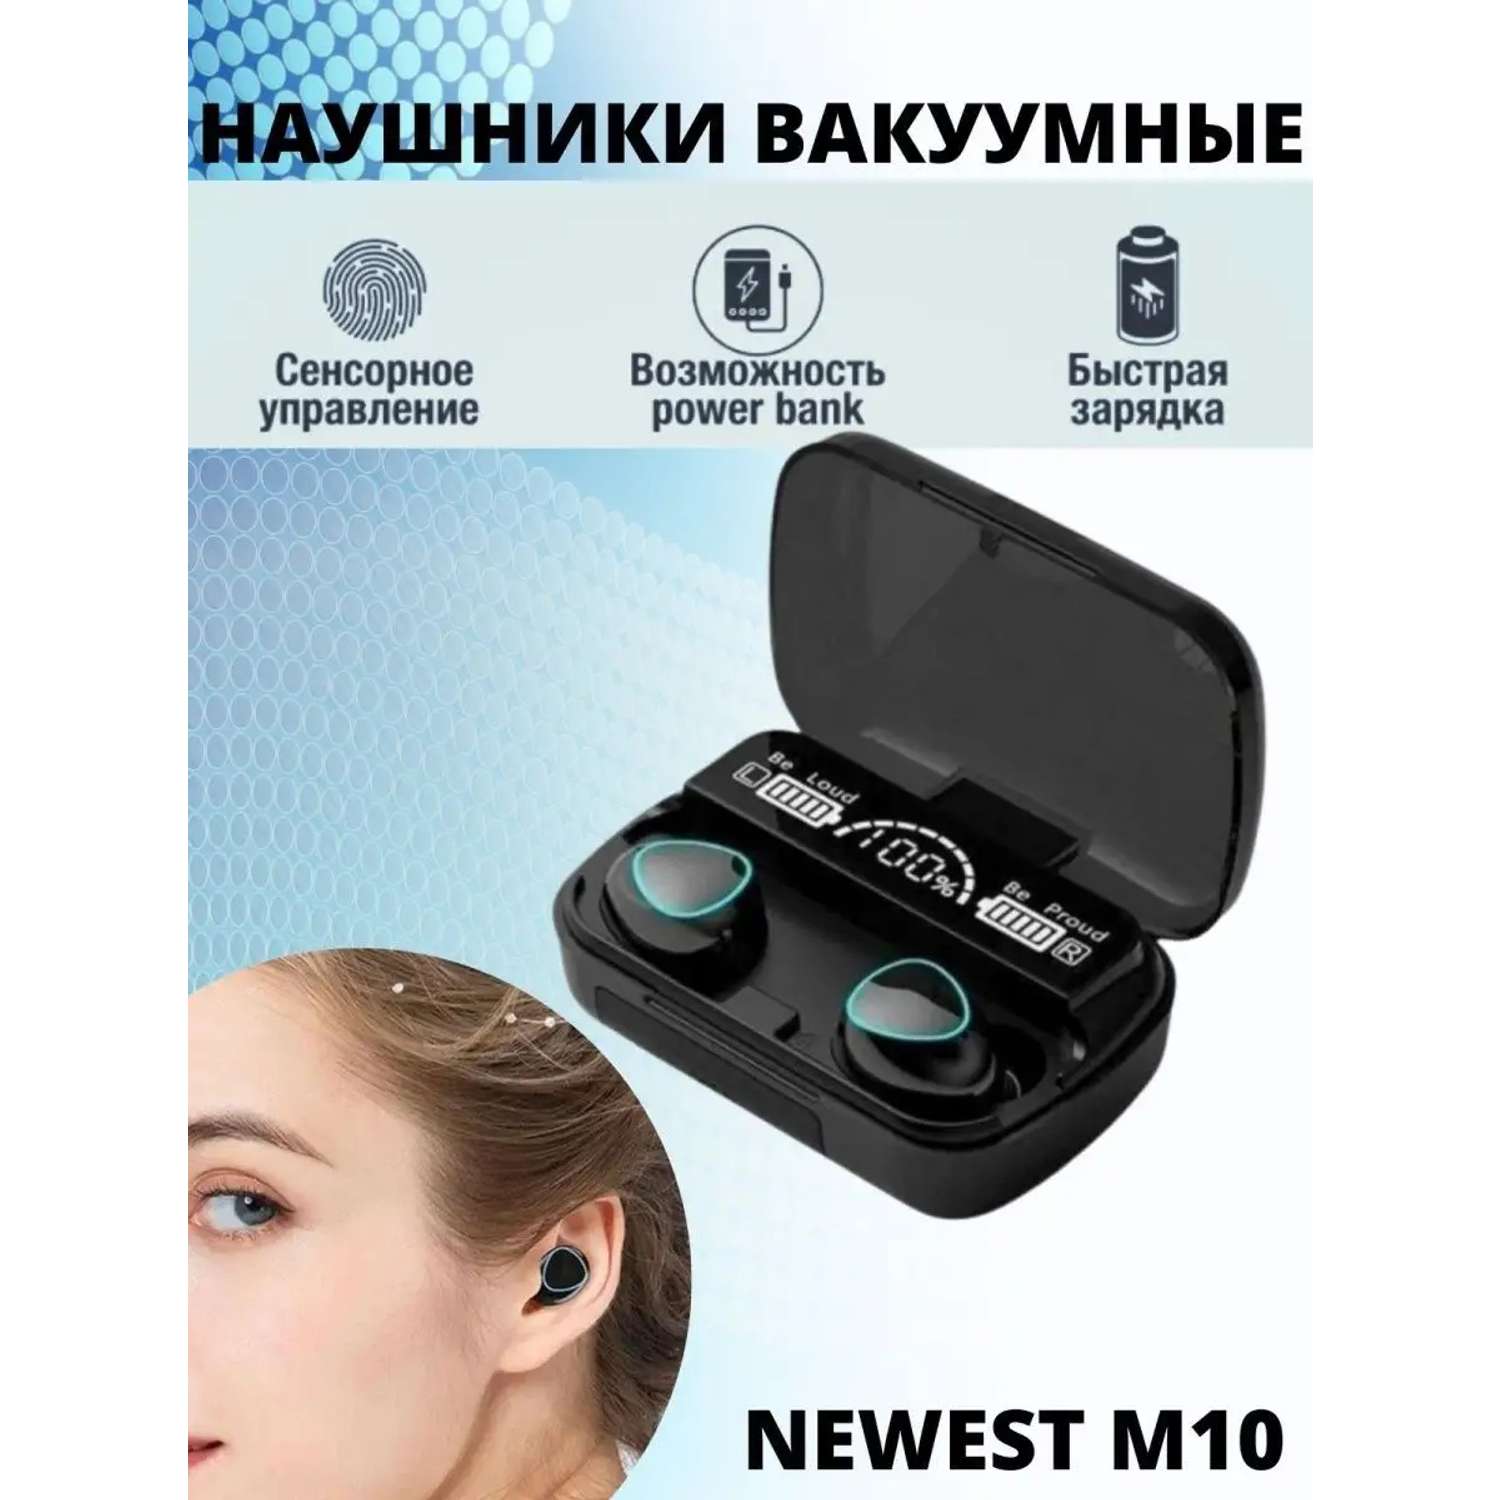 Наушники Bluetooth Newest M10 CASTLELADY вакуумные V5.3 беспроводные c PowerBank - фото 2